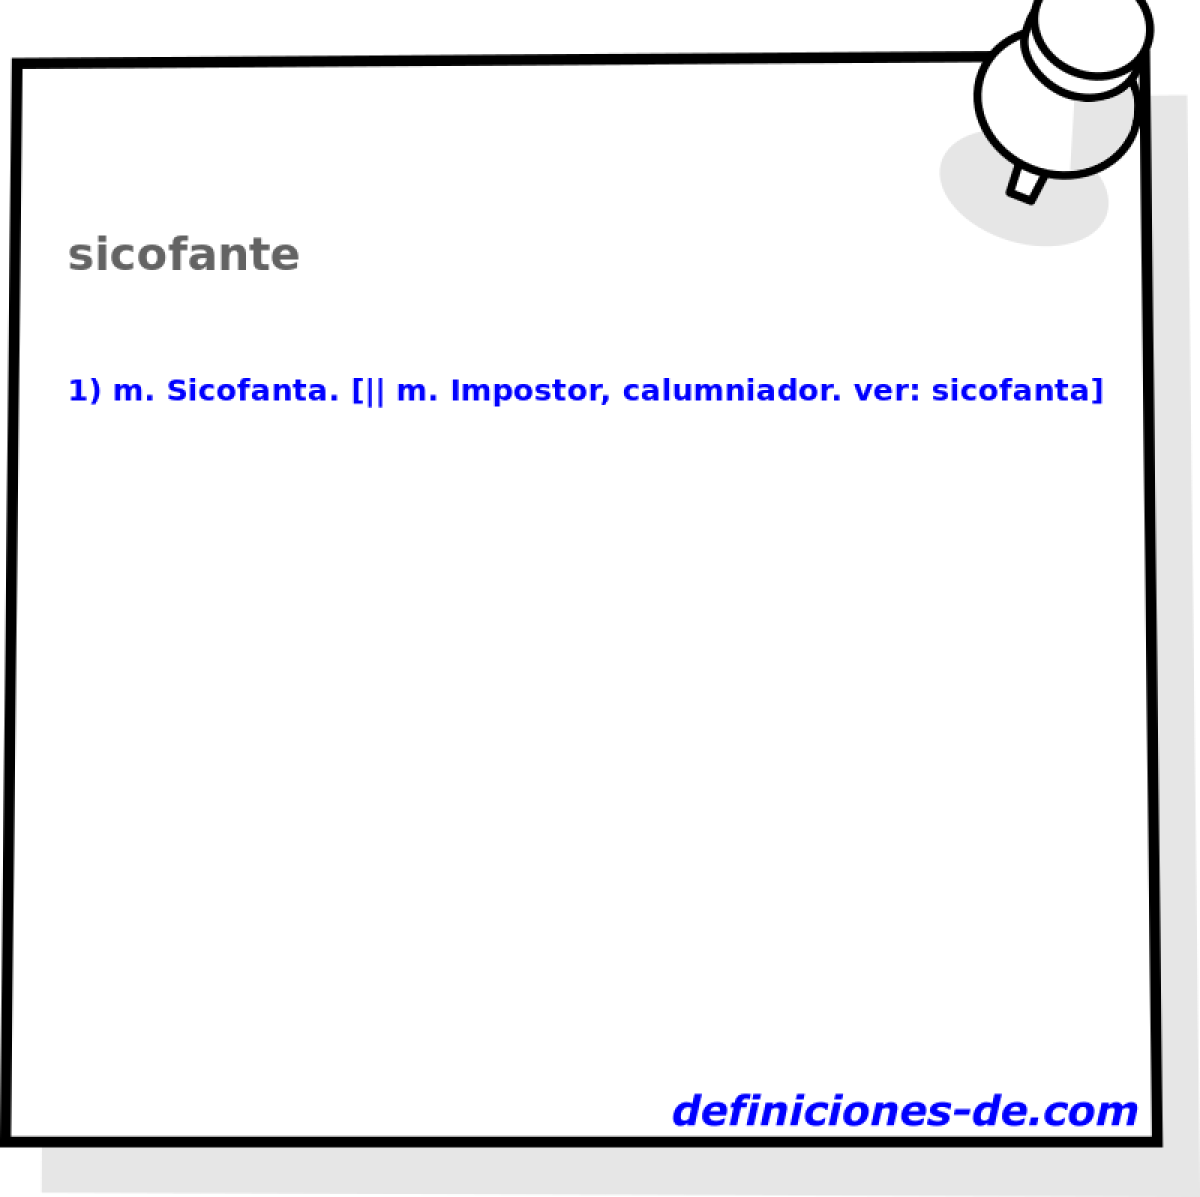 sicofante 